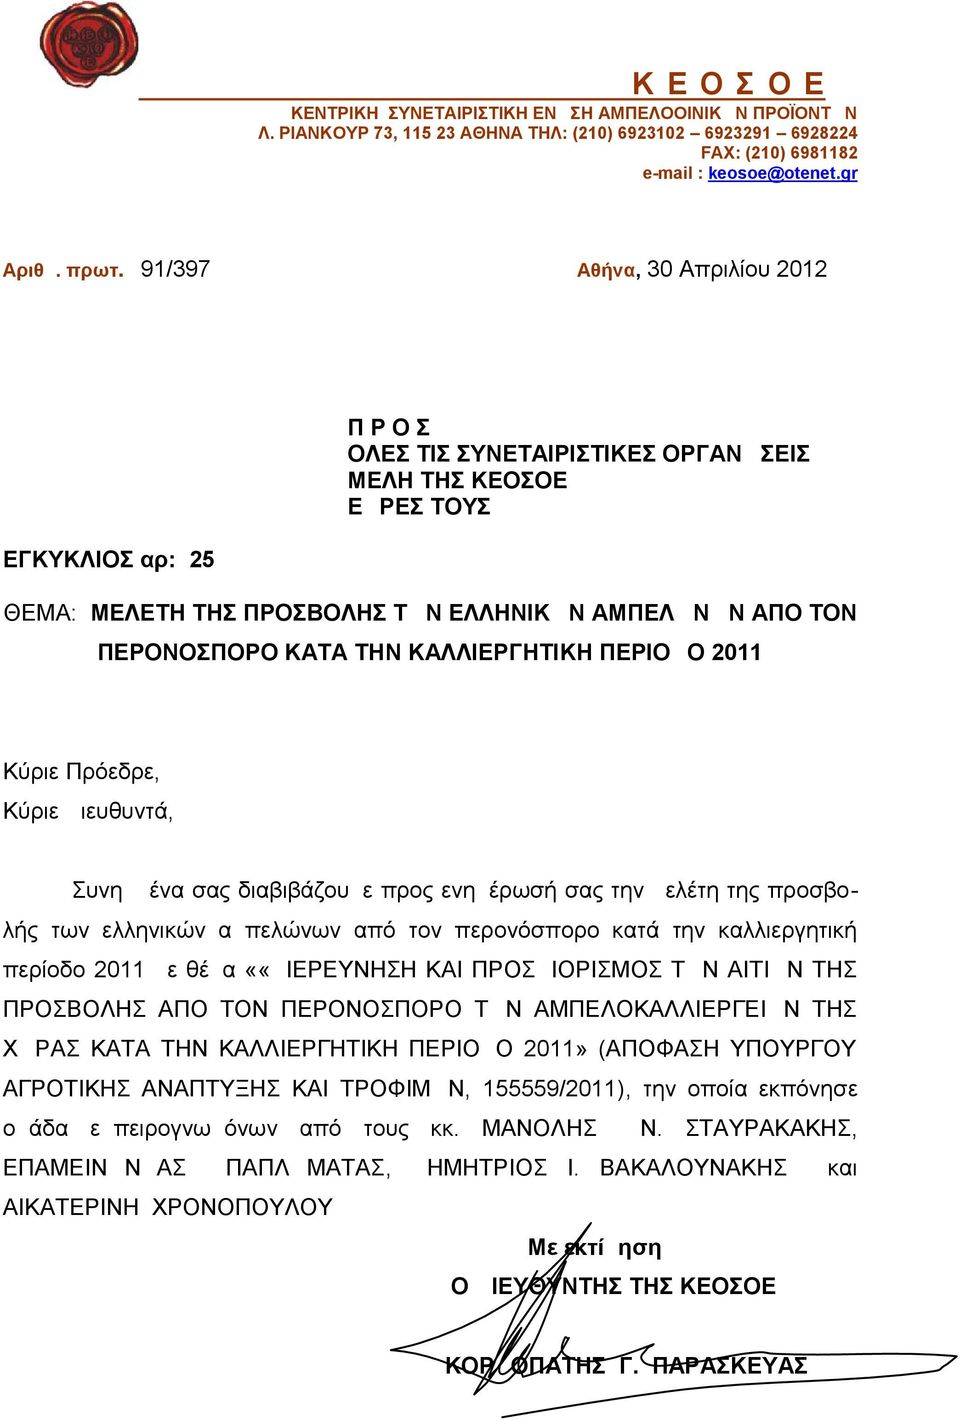 ΚΑΛΛΙΕΡΓΗΤΙΚΗ ΠΕΡΙΟΔΟ 2011 Κύριε Πρόεδρε, Κύριε Διευθυντά, Συνημμένα σας διαβιβάζουμε προς ενημέρωσή σας την μελέτη της προσβολής των ελληνικών αμπελώνων από τον περονόσπορο κατά την καλλιεργητική